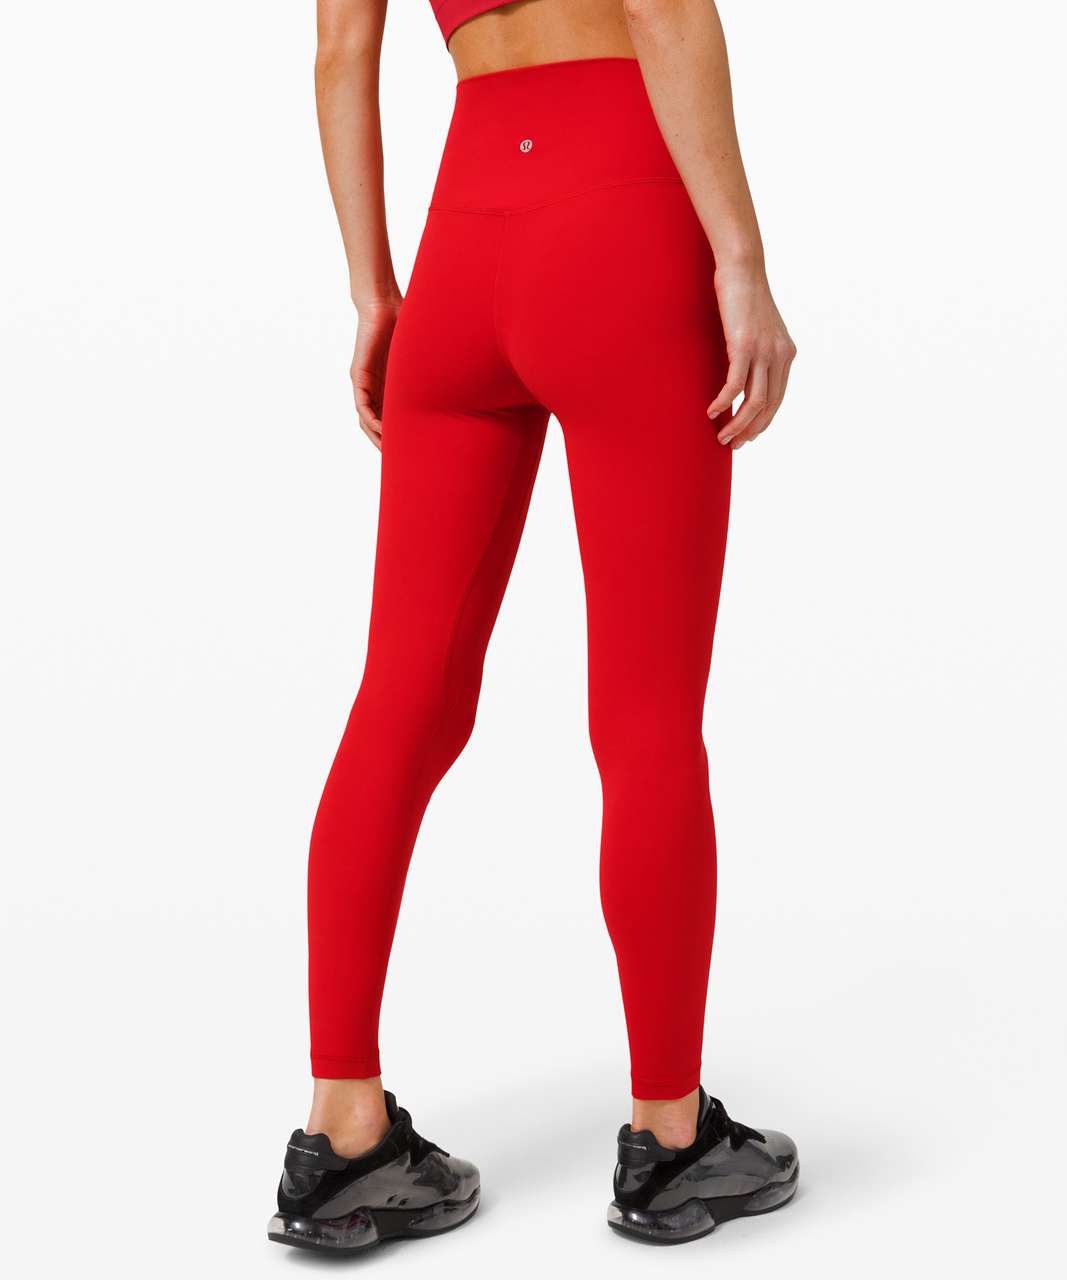 dark red lululemon leggings